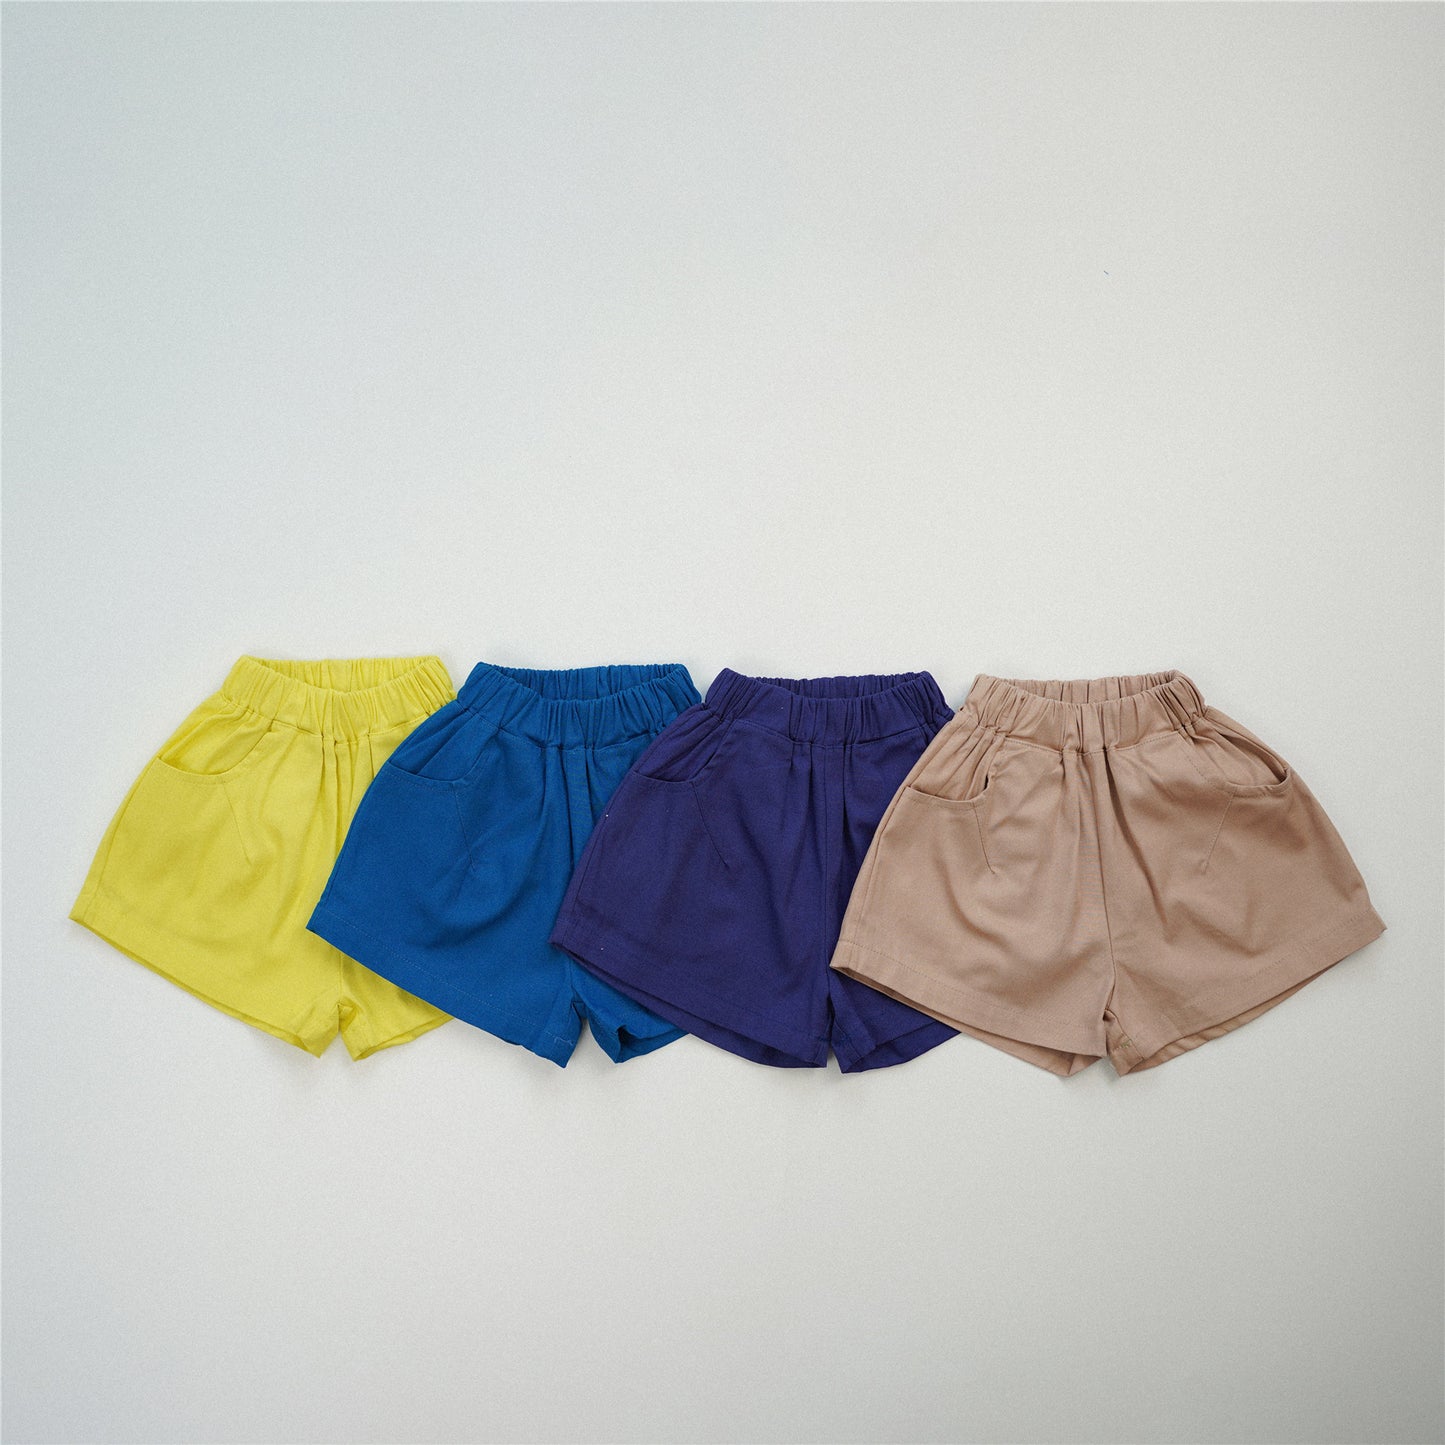 【S4042621】夏季款 兒童短褲 褲子 水洗純棉 五分短褲-4色